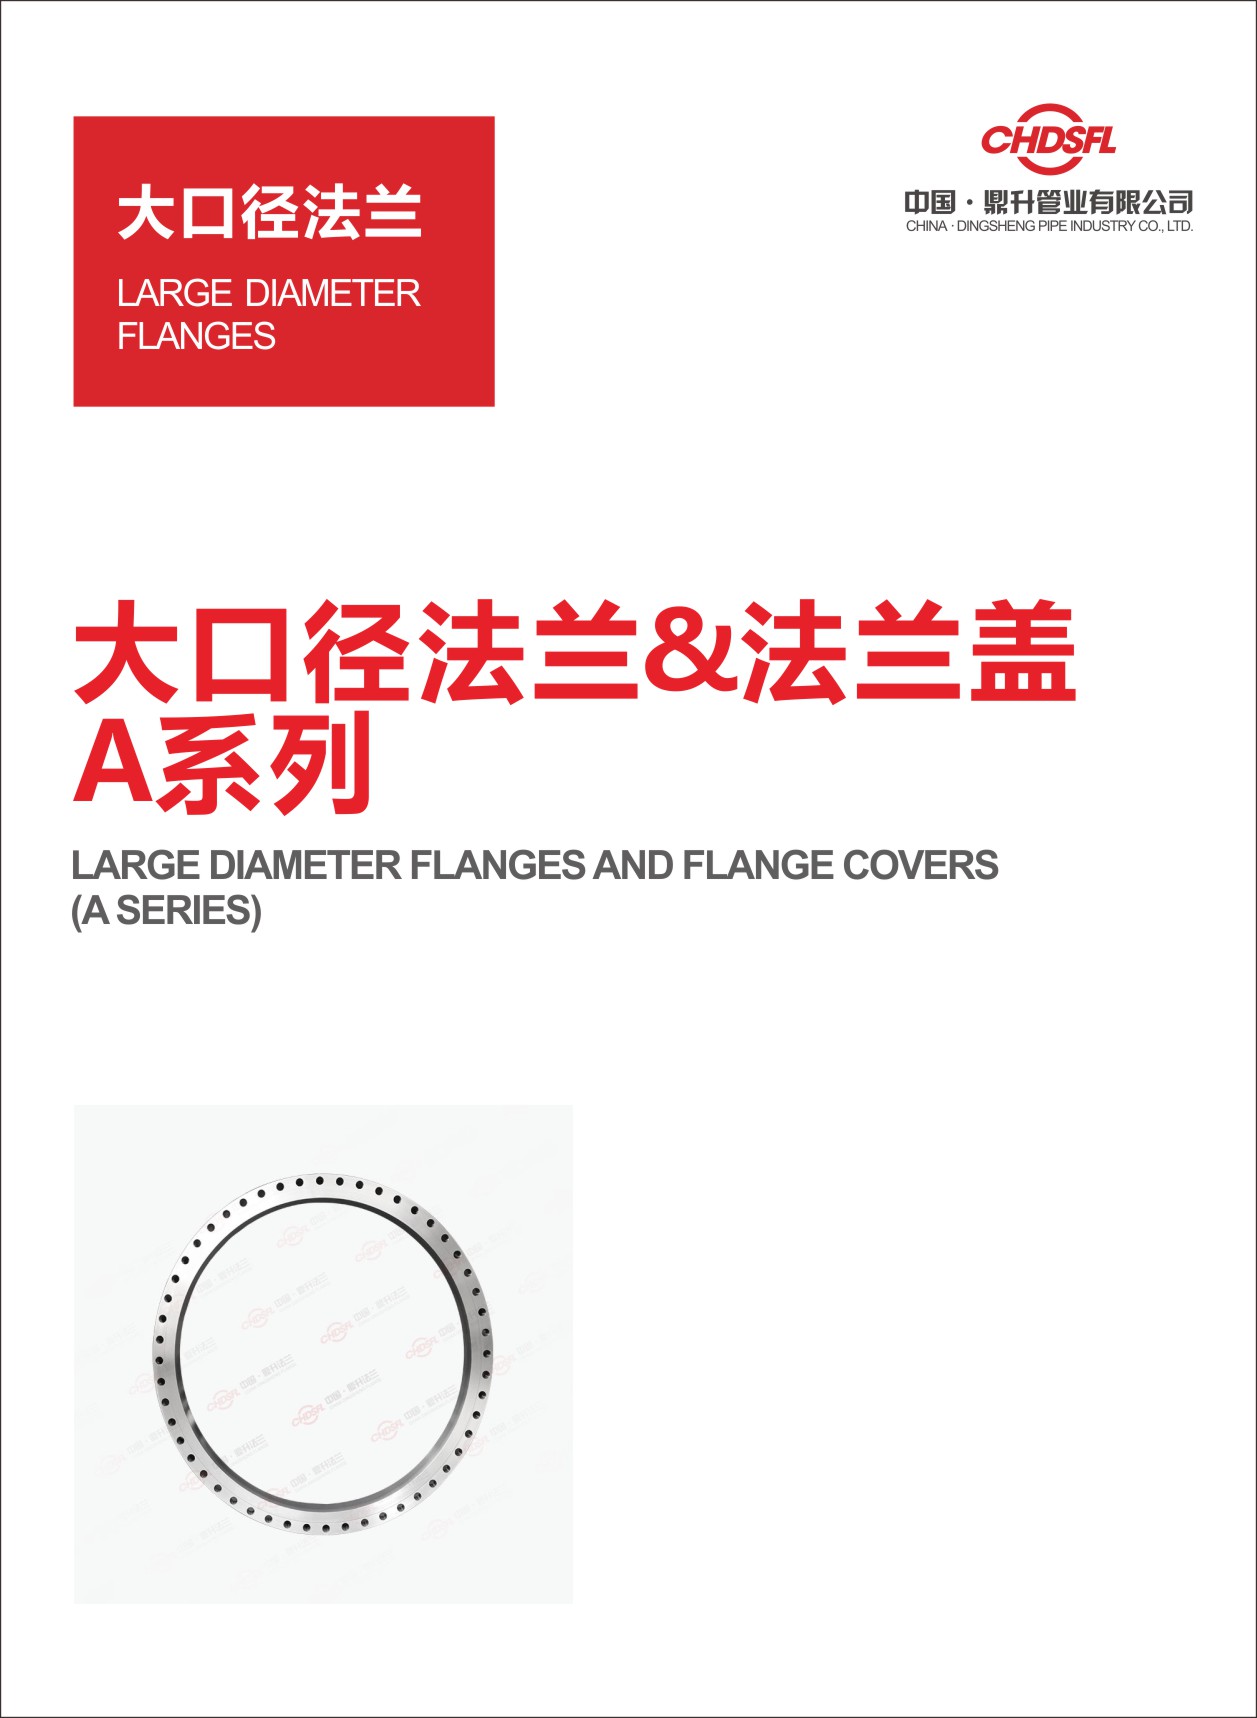 Large Diameter Flange & Blind Flange A-Series